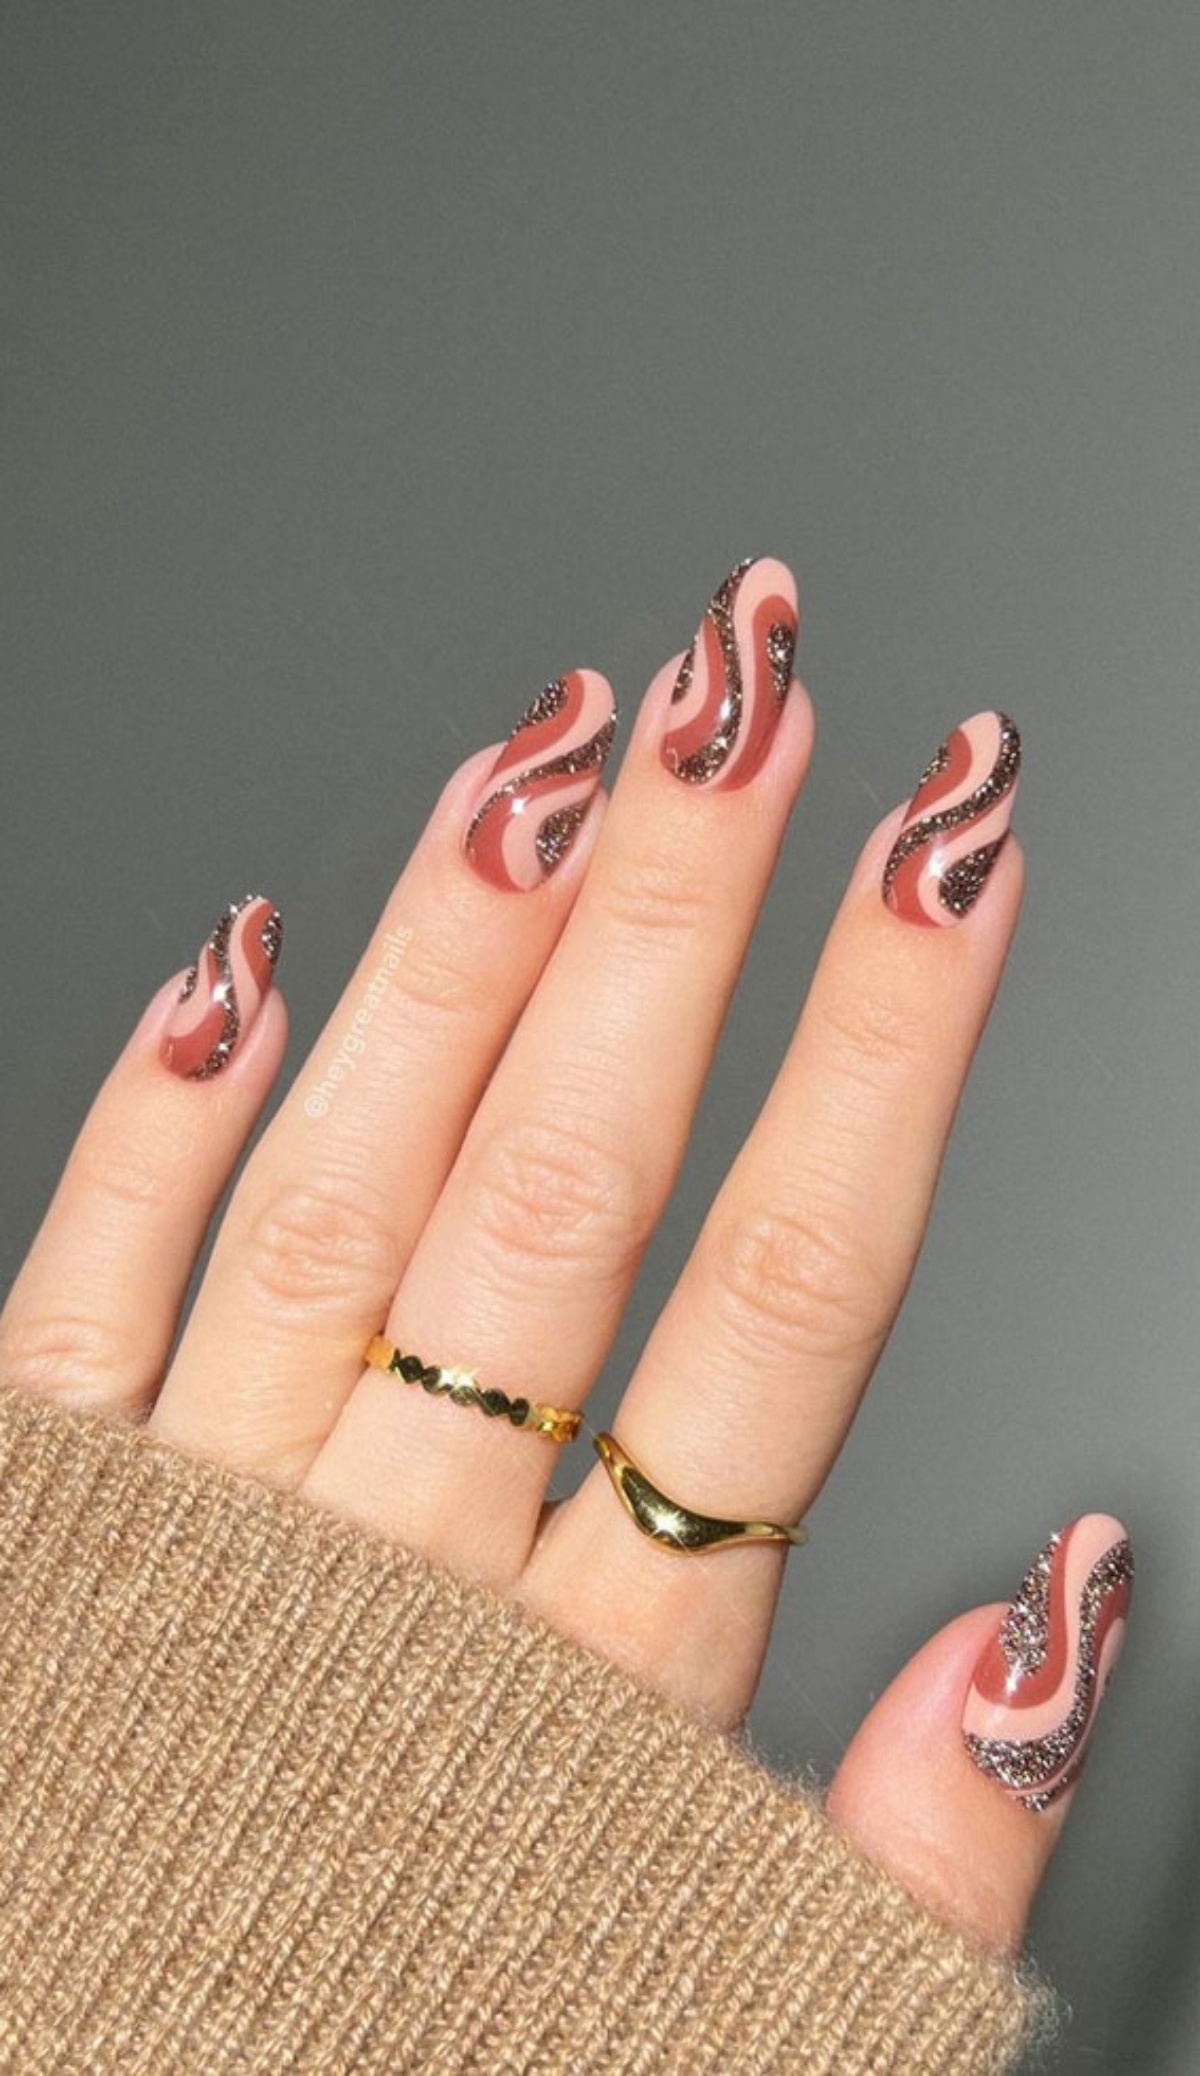 decorazione nails art smalto glitter marrone unghie color cannella